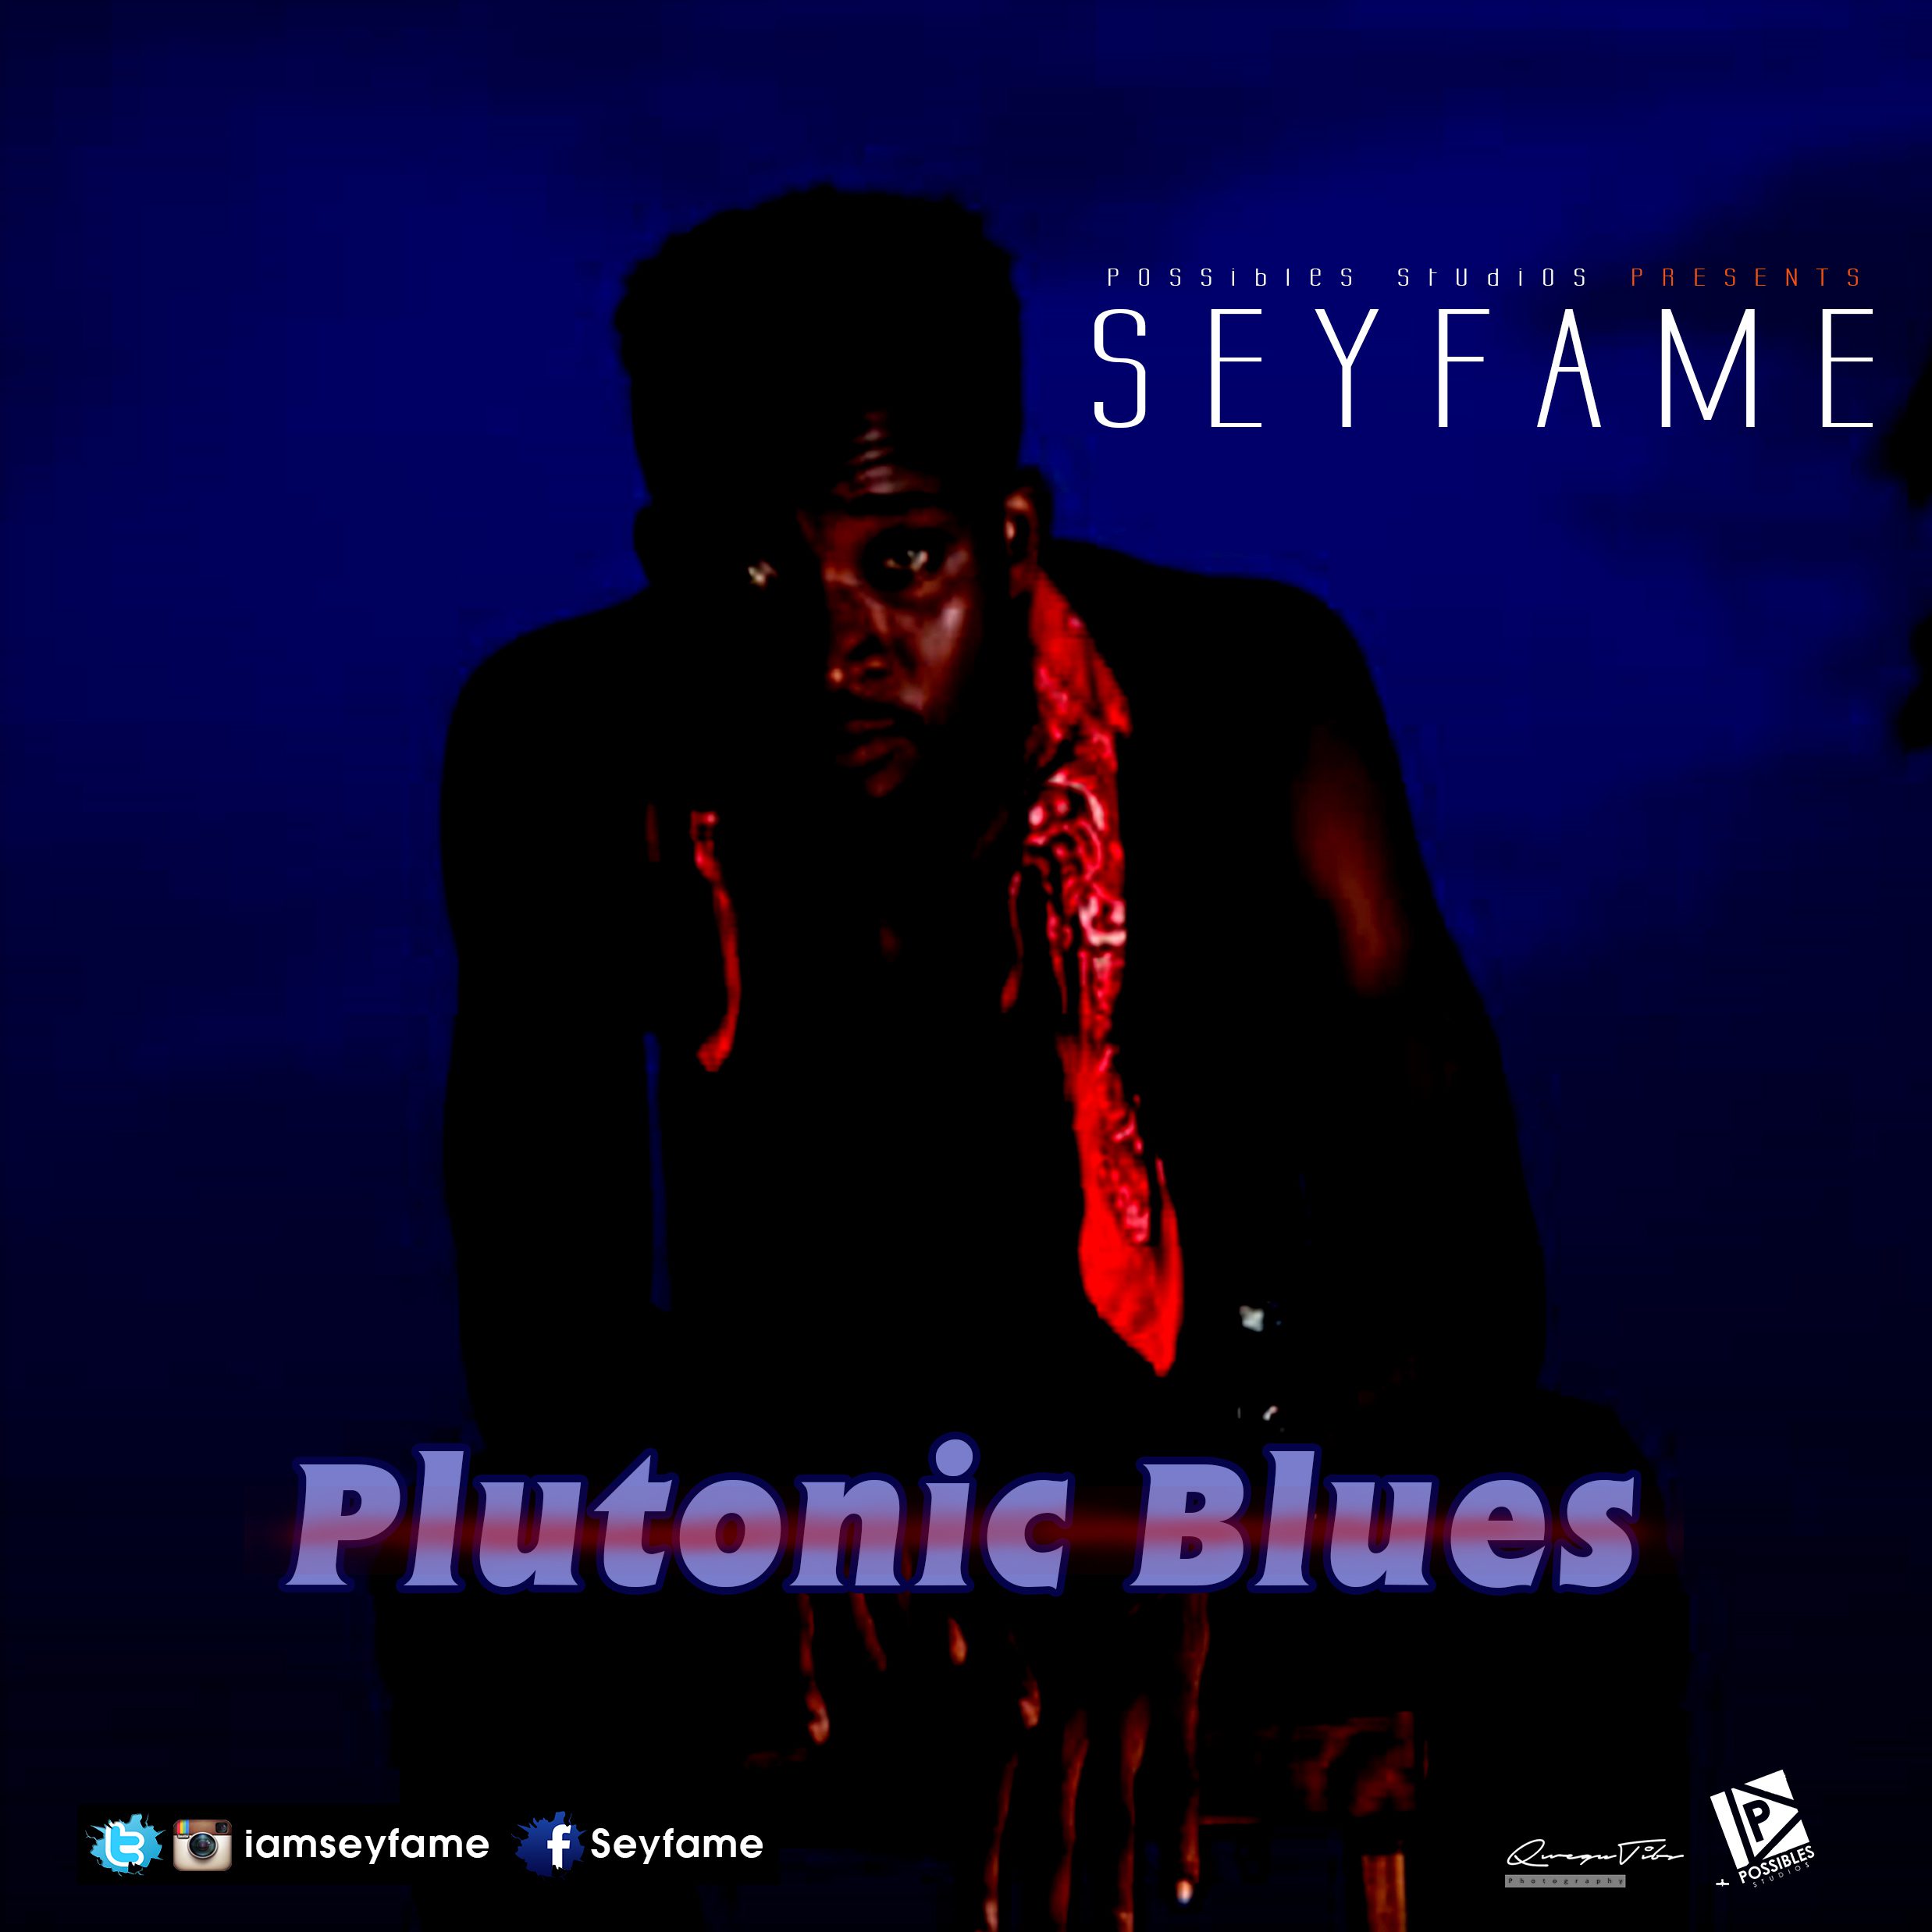 Seyfame Plutonic Blues 2